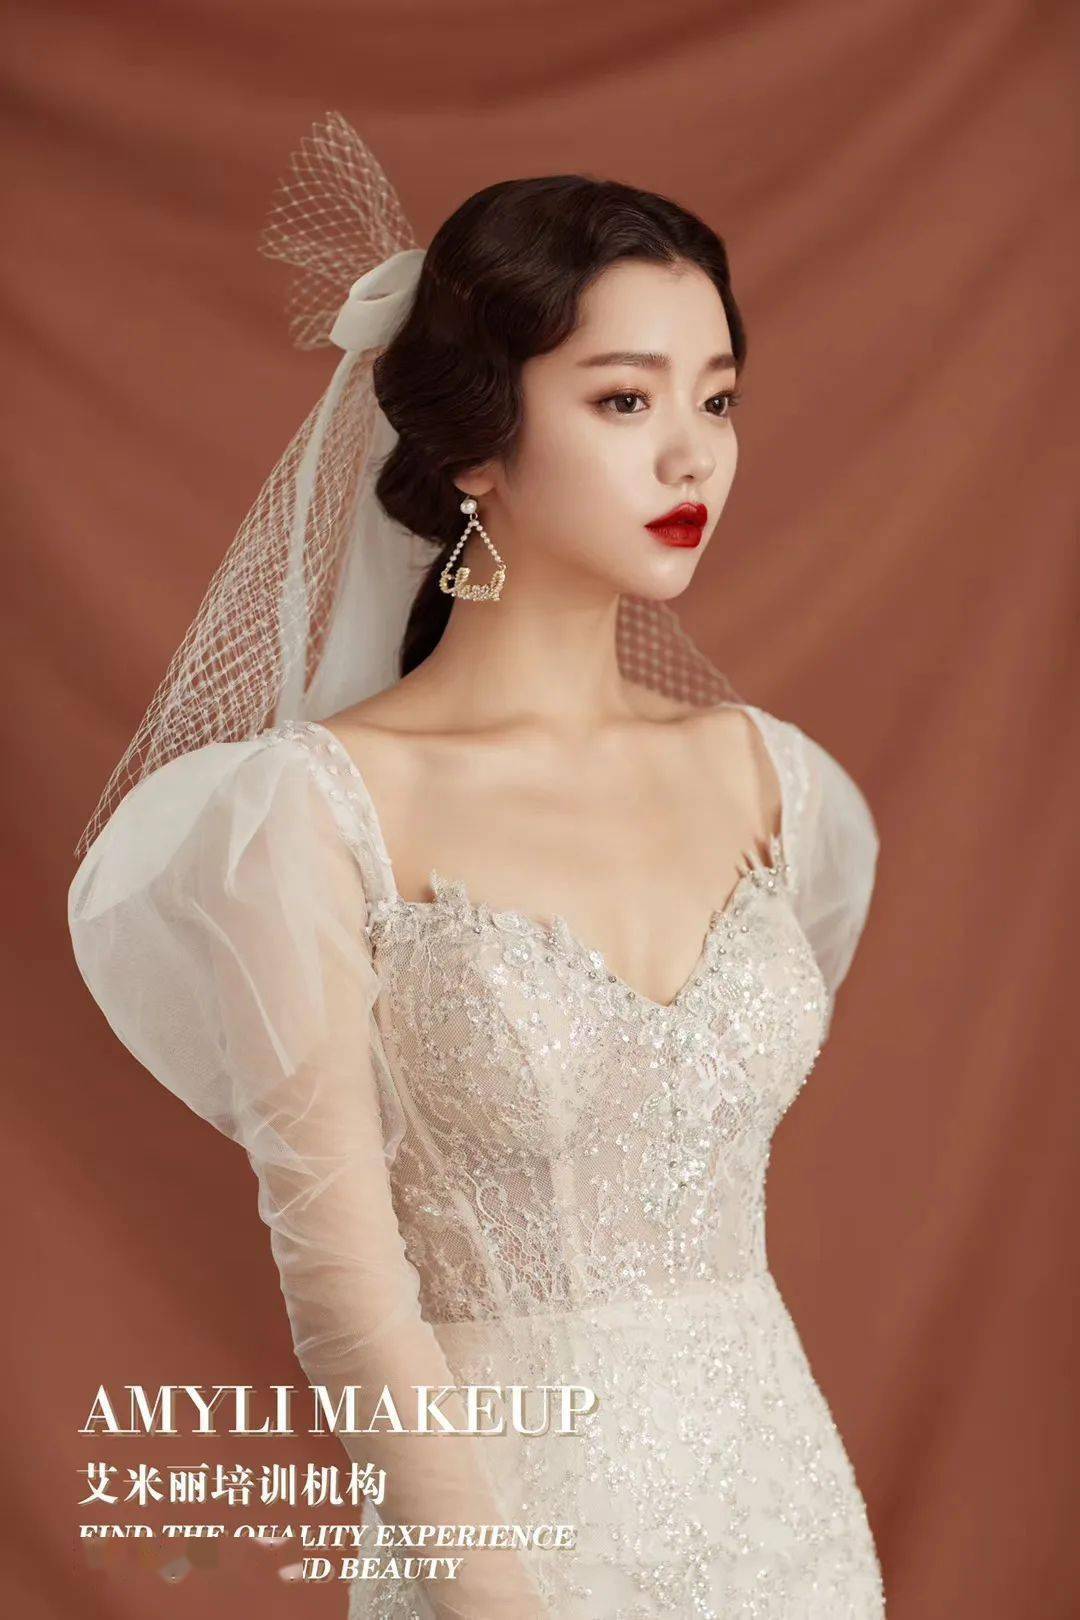 婚礼上,这些韩系新娘发型最好看!